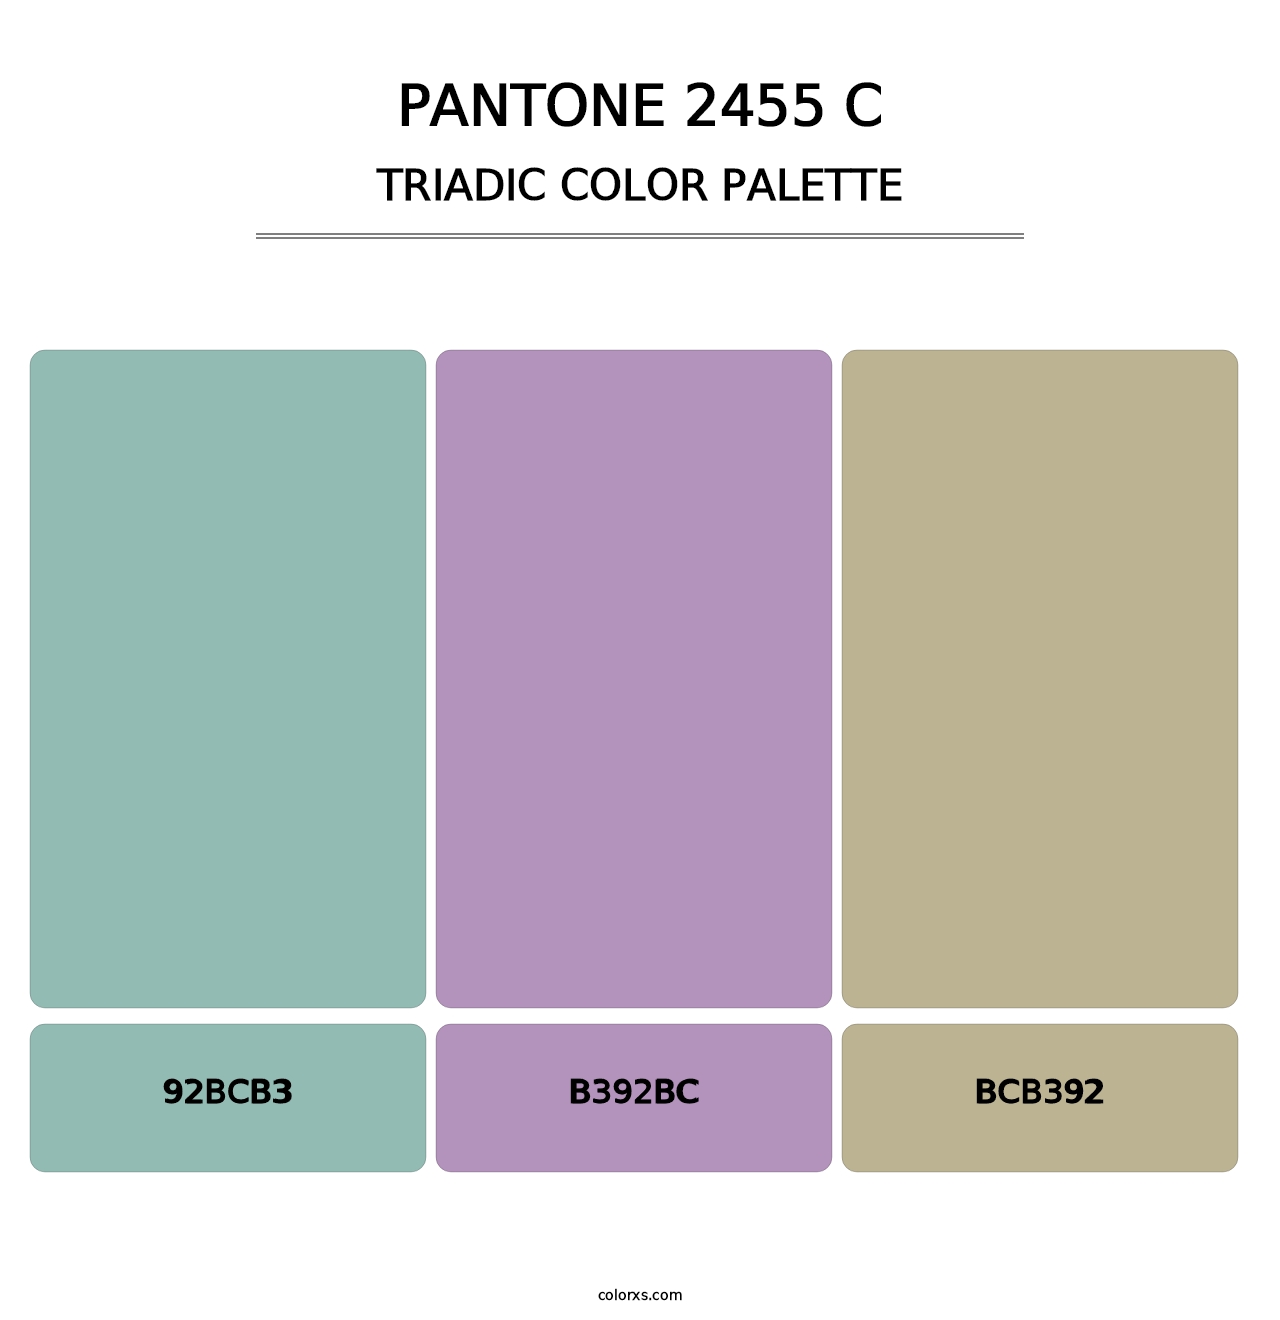 PANTONE 2455 C - Triadic Color Palette